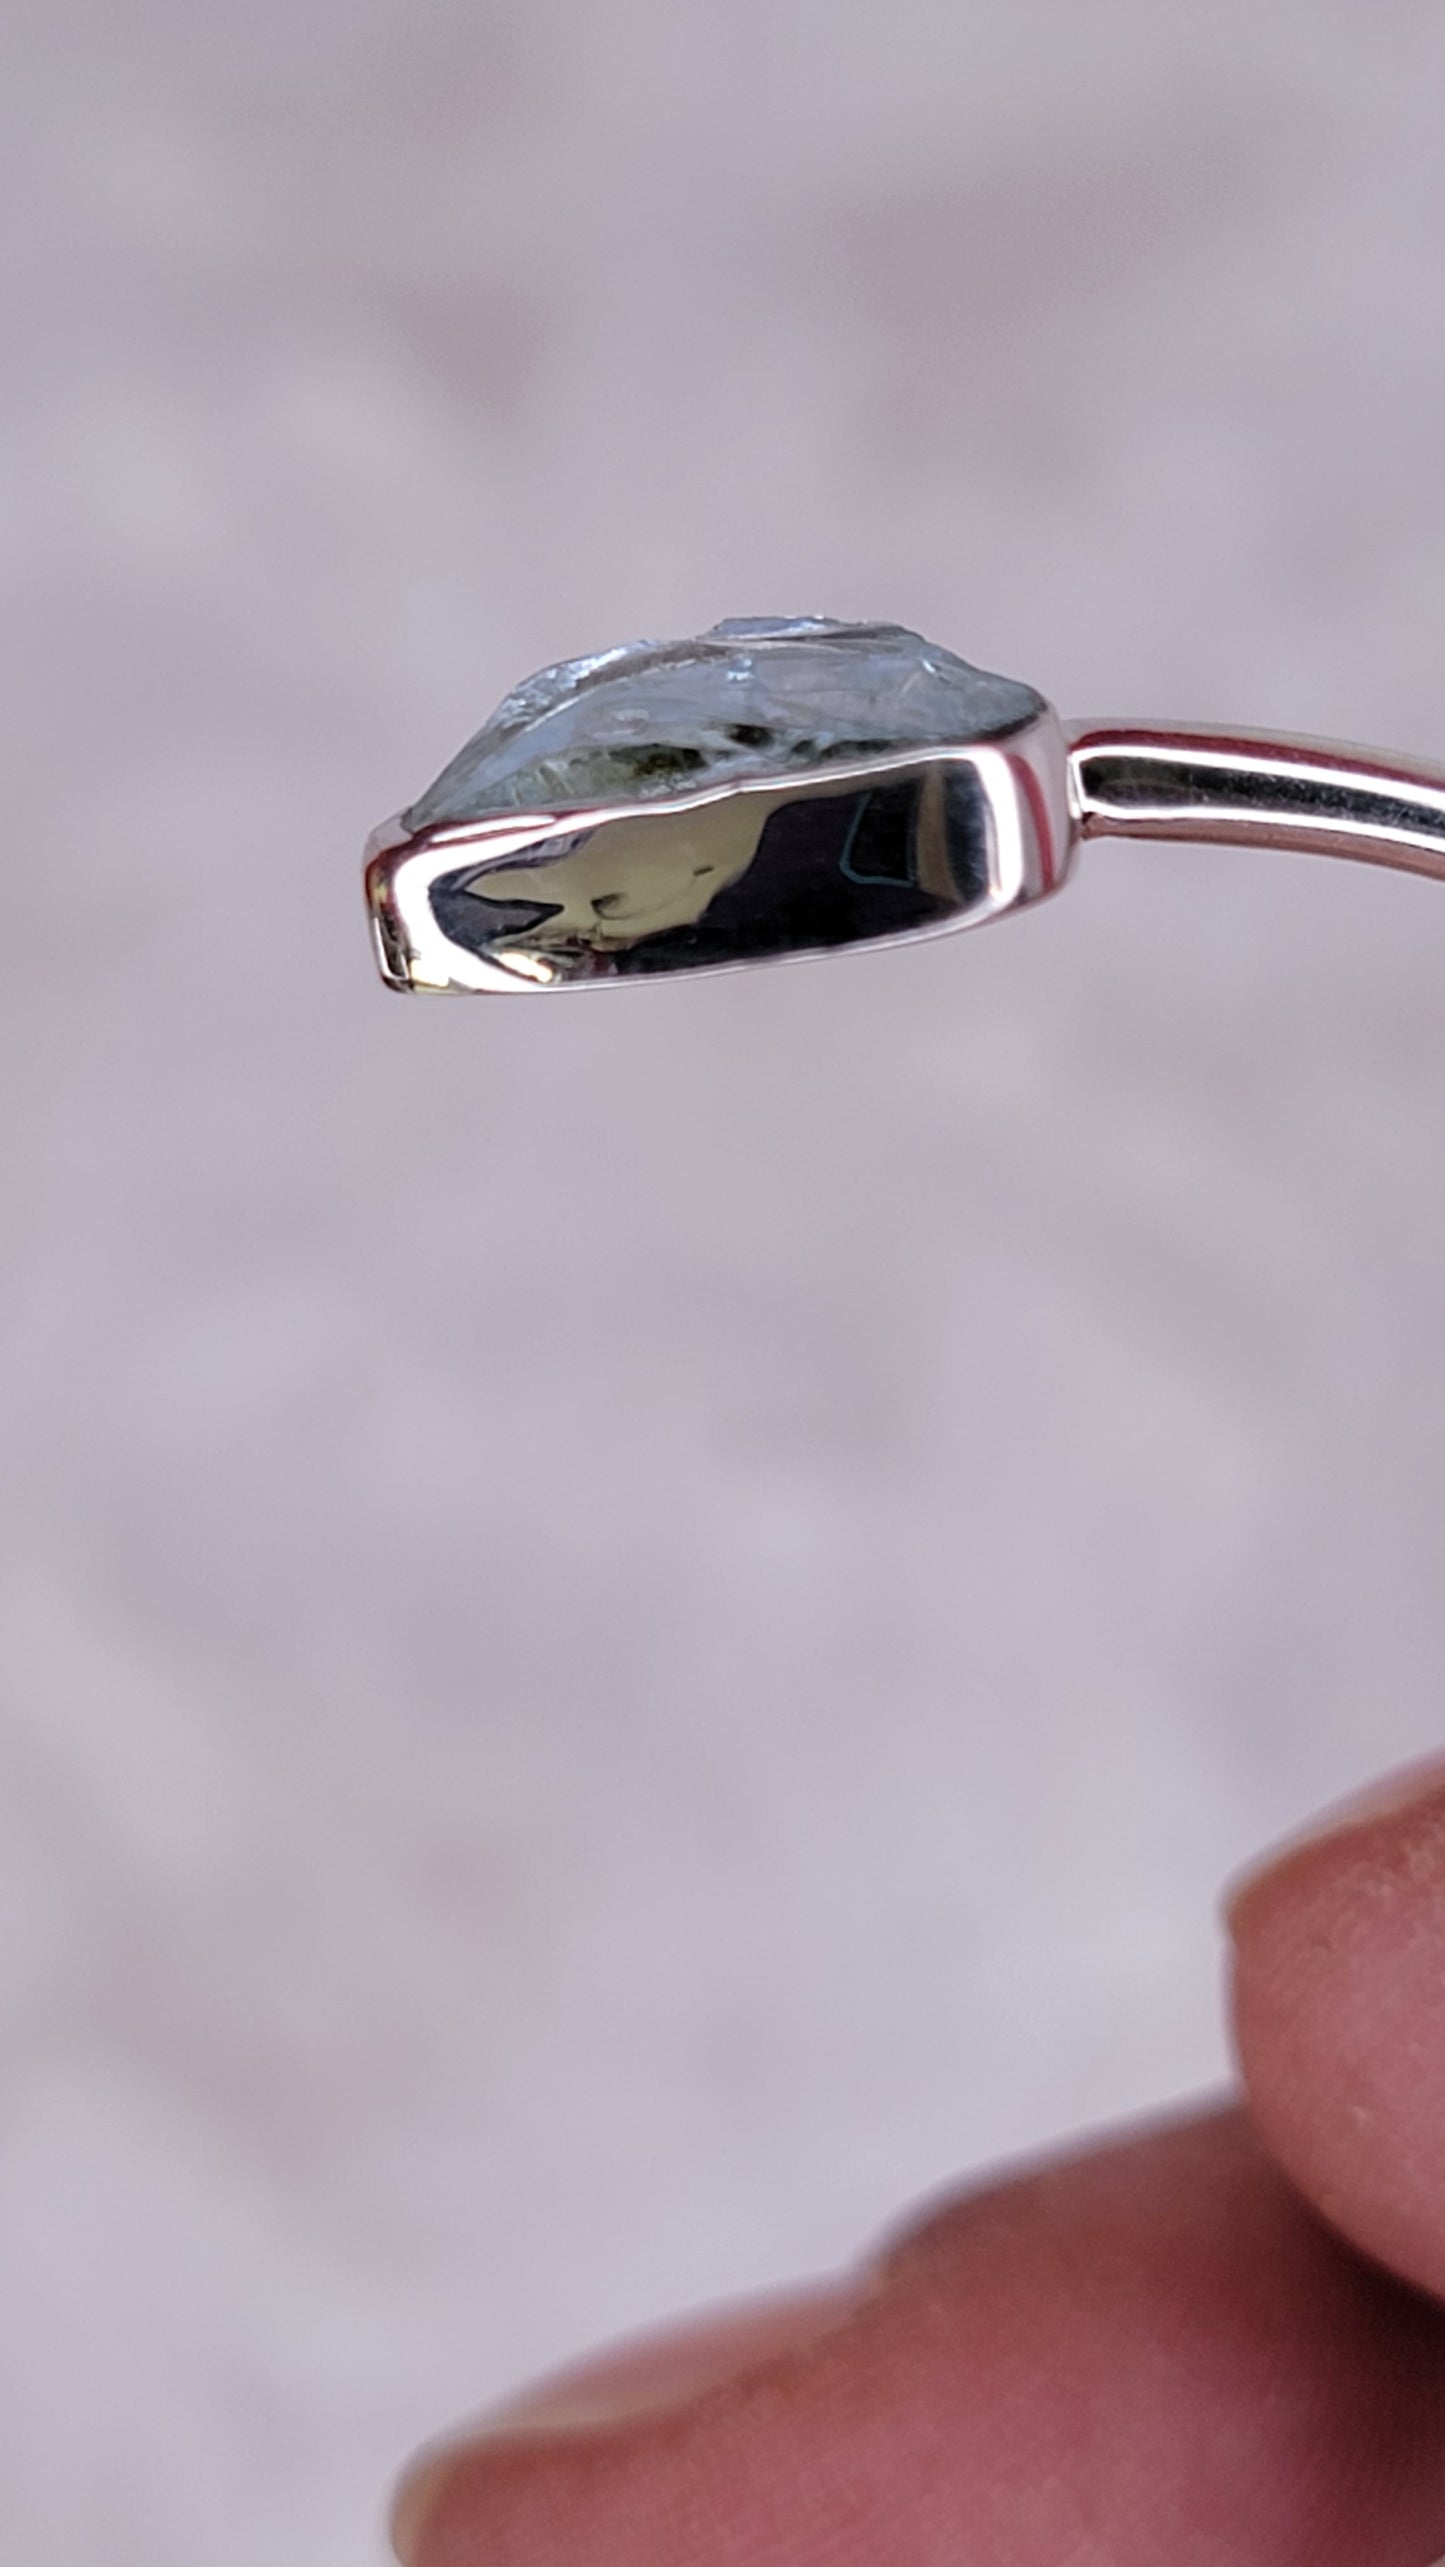 Rough Aquamarine Sterling Silver Cuff Bracelet